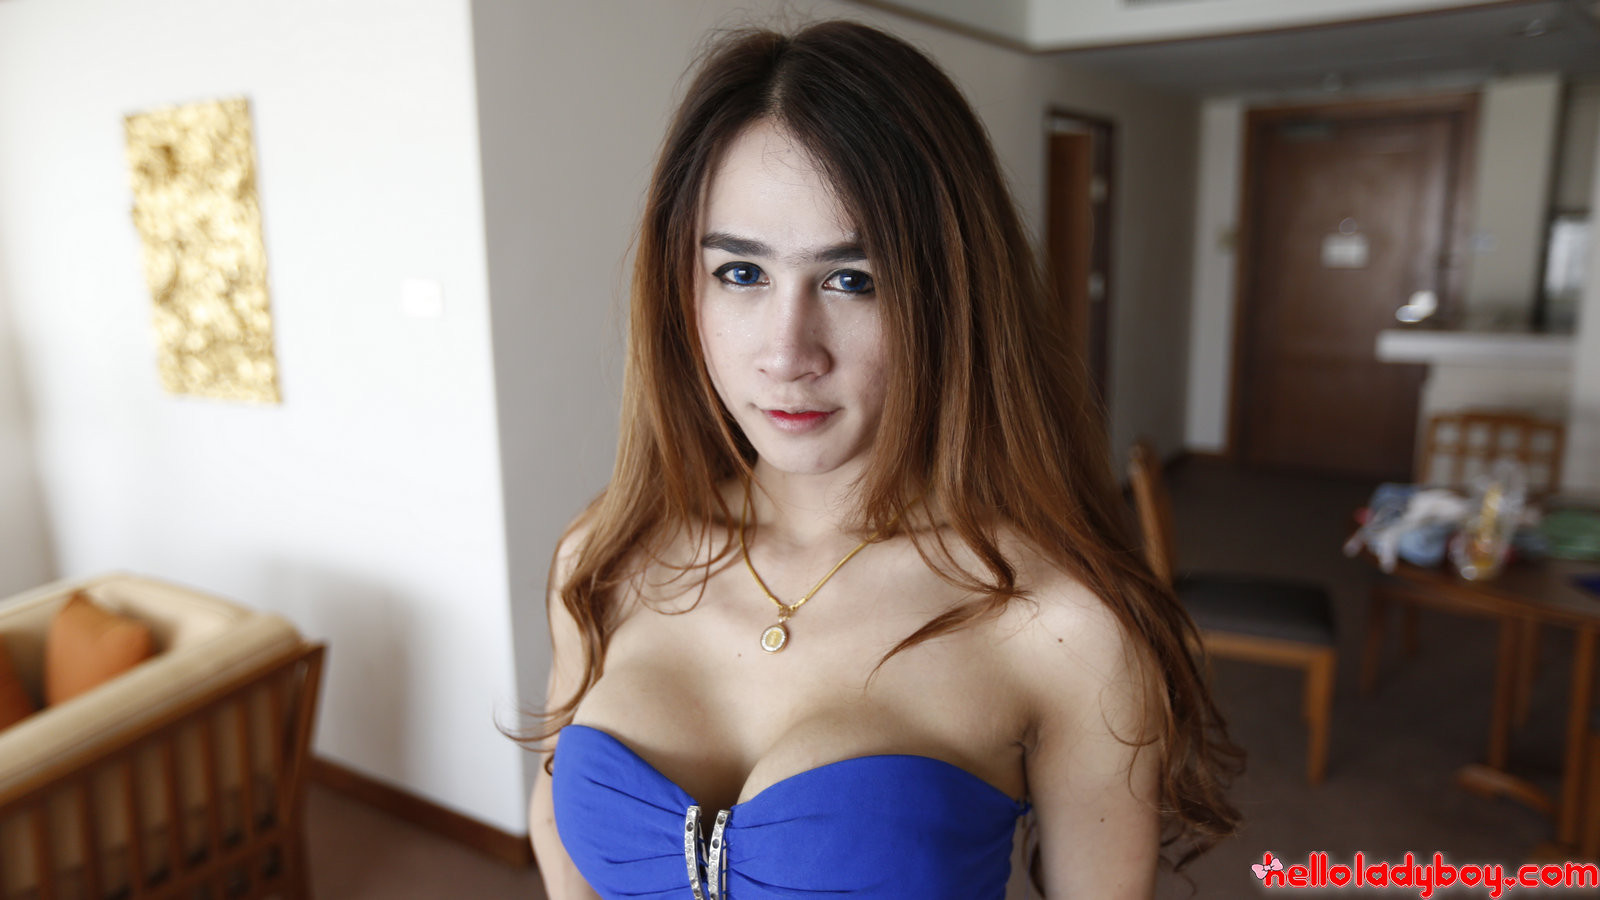 Thai ladyboy with big fake tits and long hair gets facial #67196856